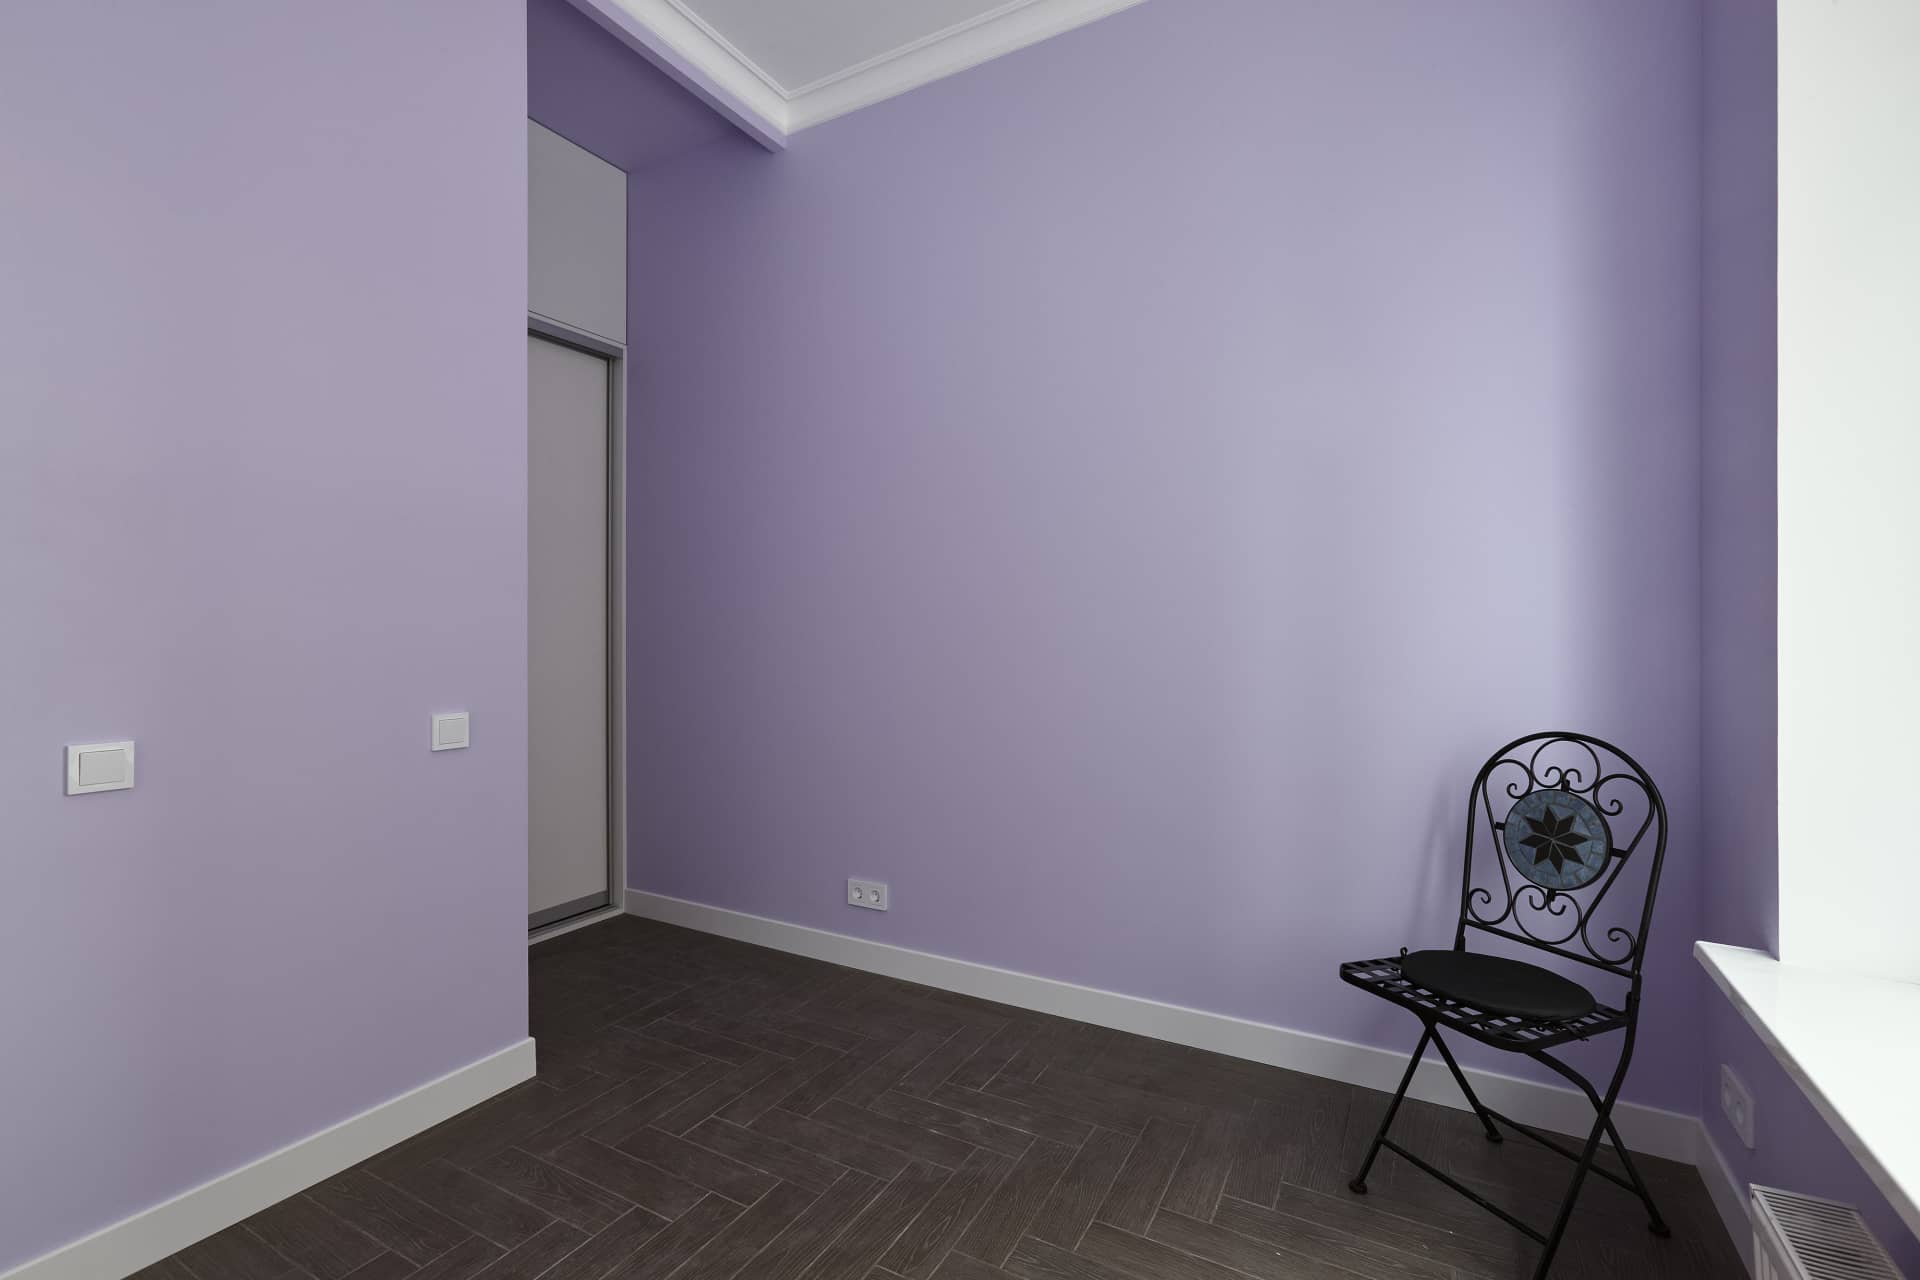 Оформление интерьера в фиолетовый цвет. Фото № 68535.